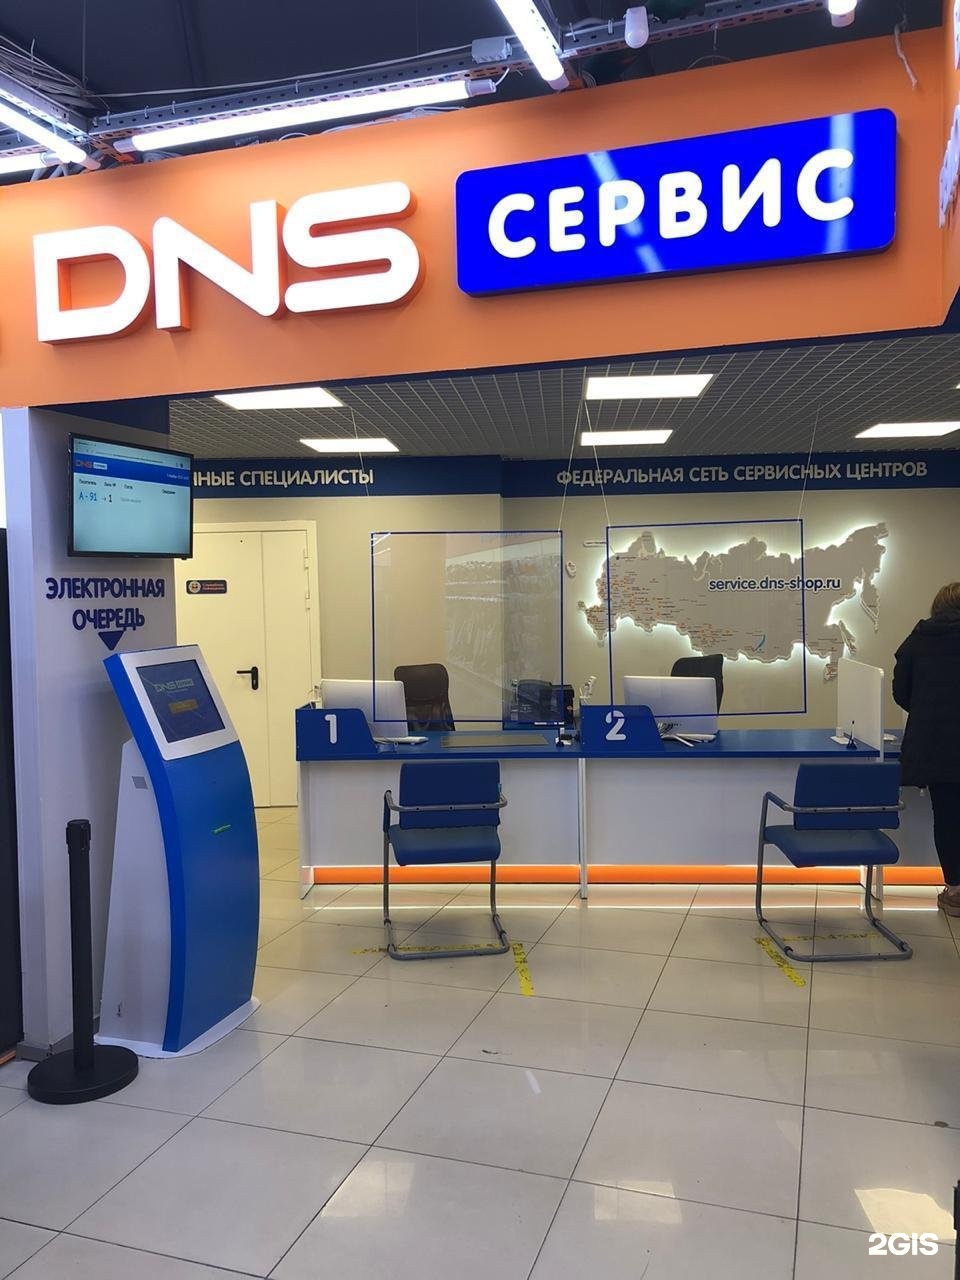 Купить центр в днс. ДНС СЦ. DNS сервисный центр. ДНС сервис СПБ. ДНС сервис центр СПБ.